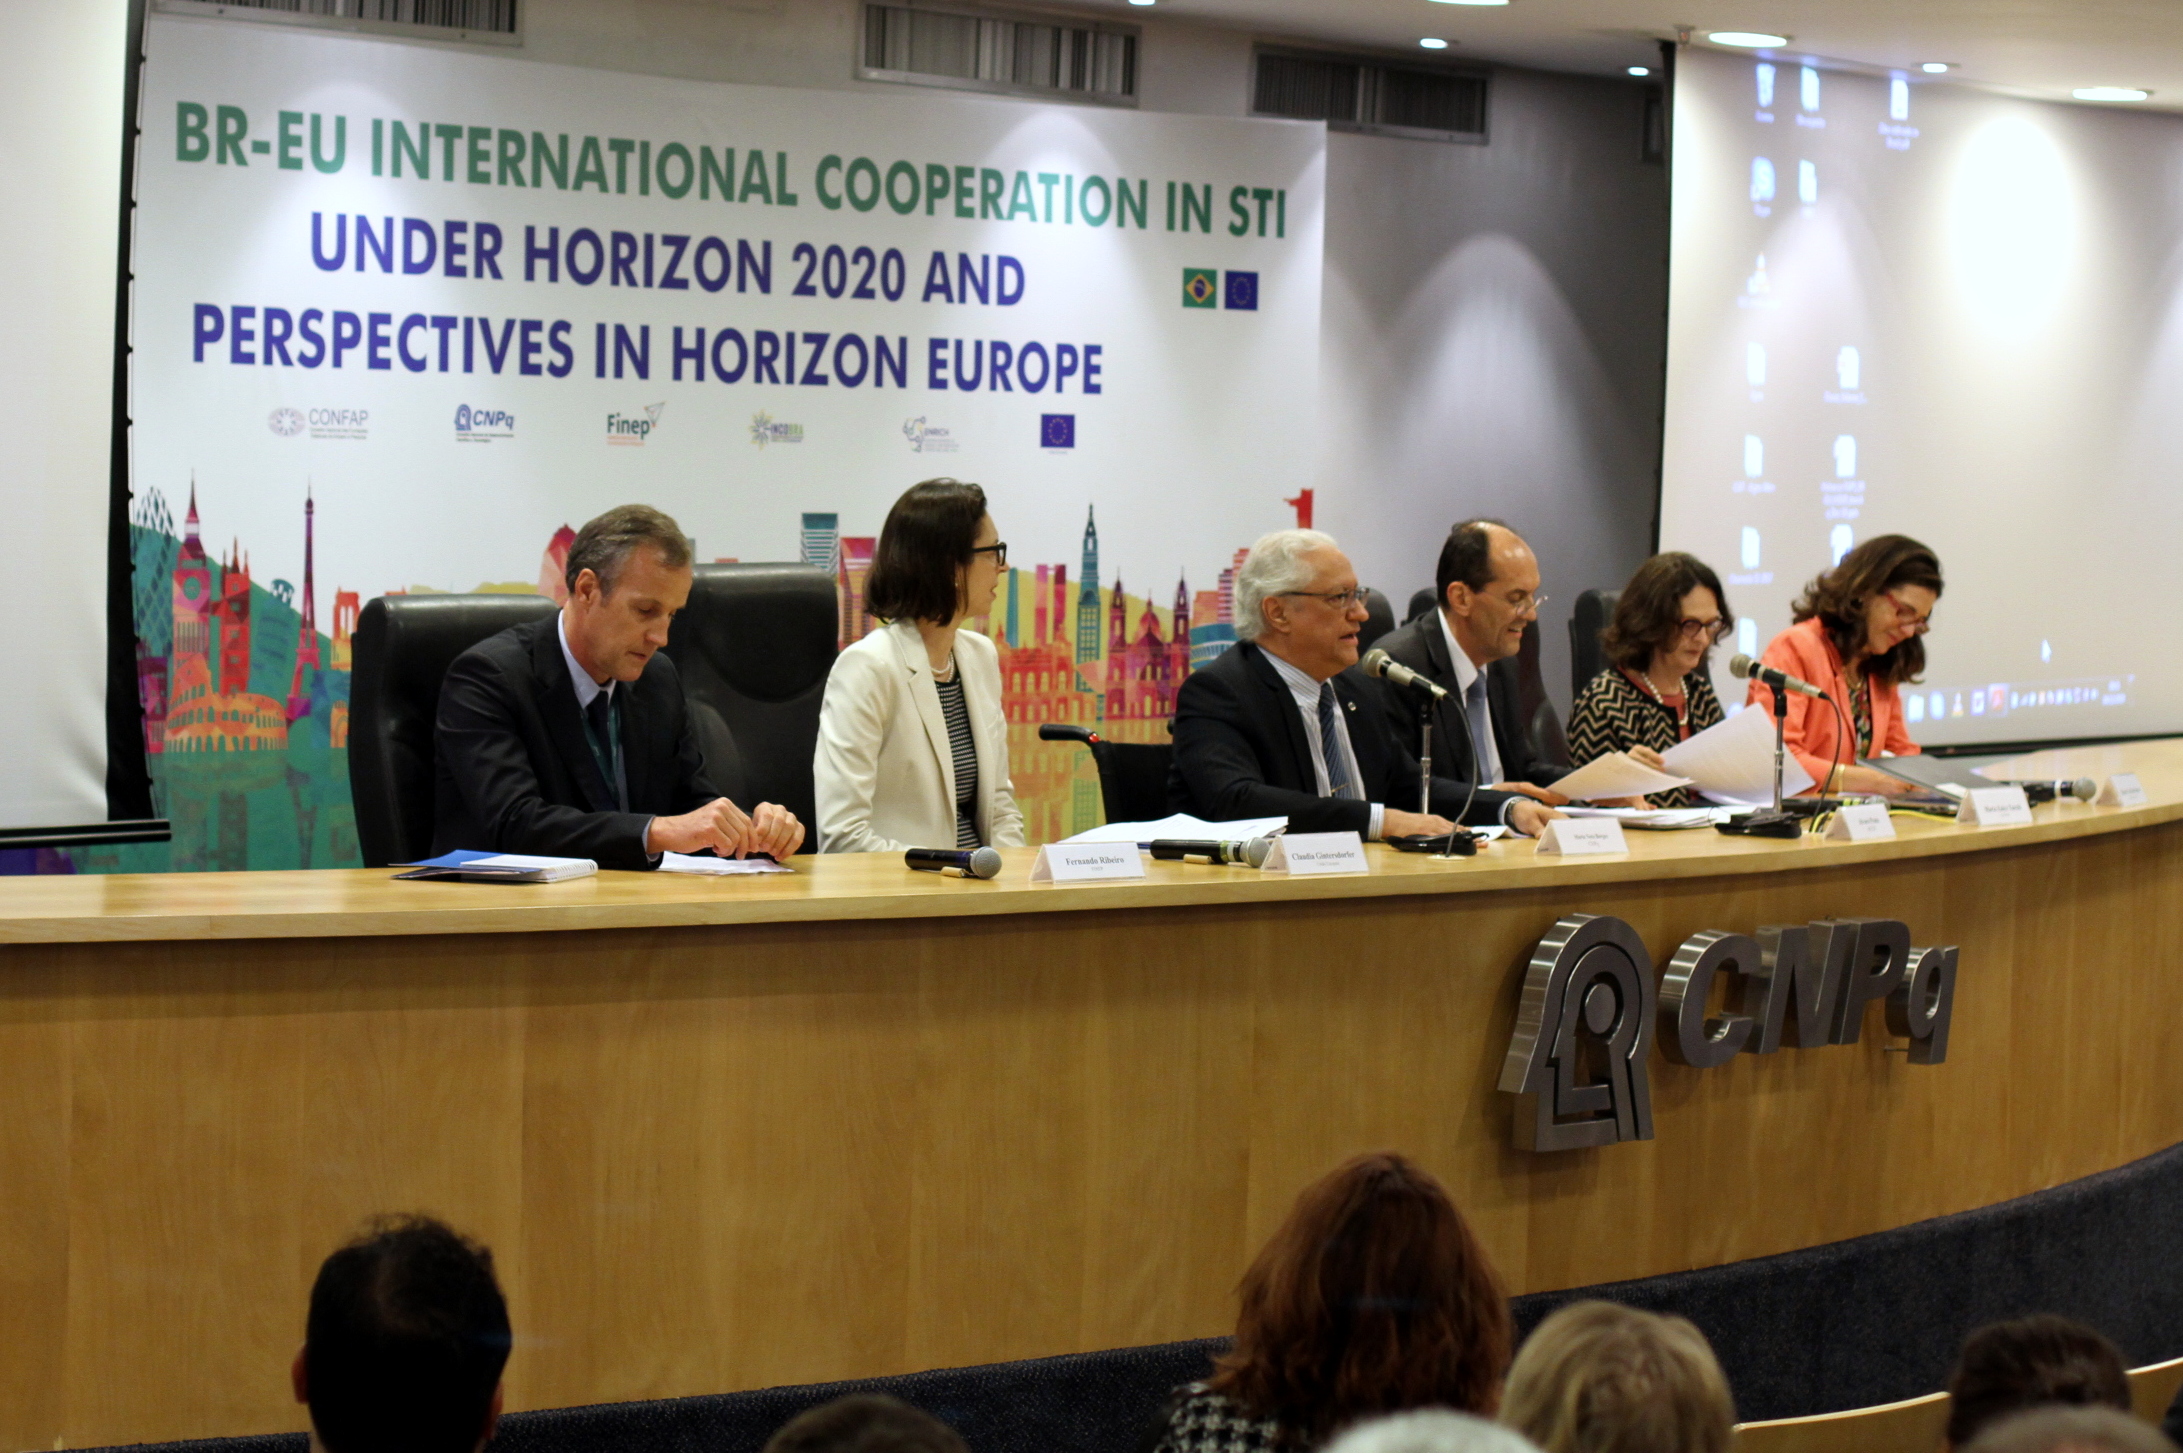 Cooperação Brasil-União Europeia em Ciência, Tecnologia e Inovação no Contexto do Horizon 2020 e Perspectivas no Horizon Europe